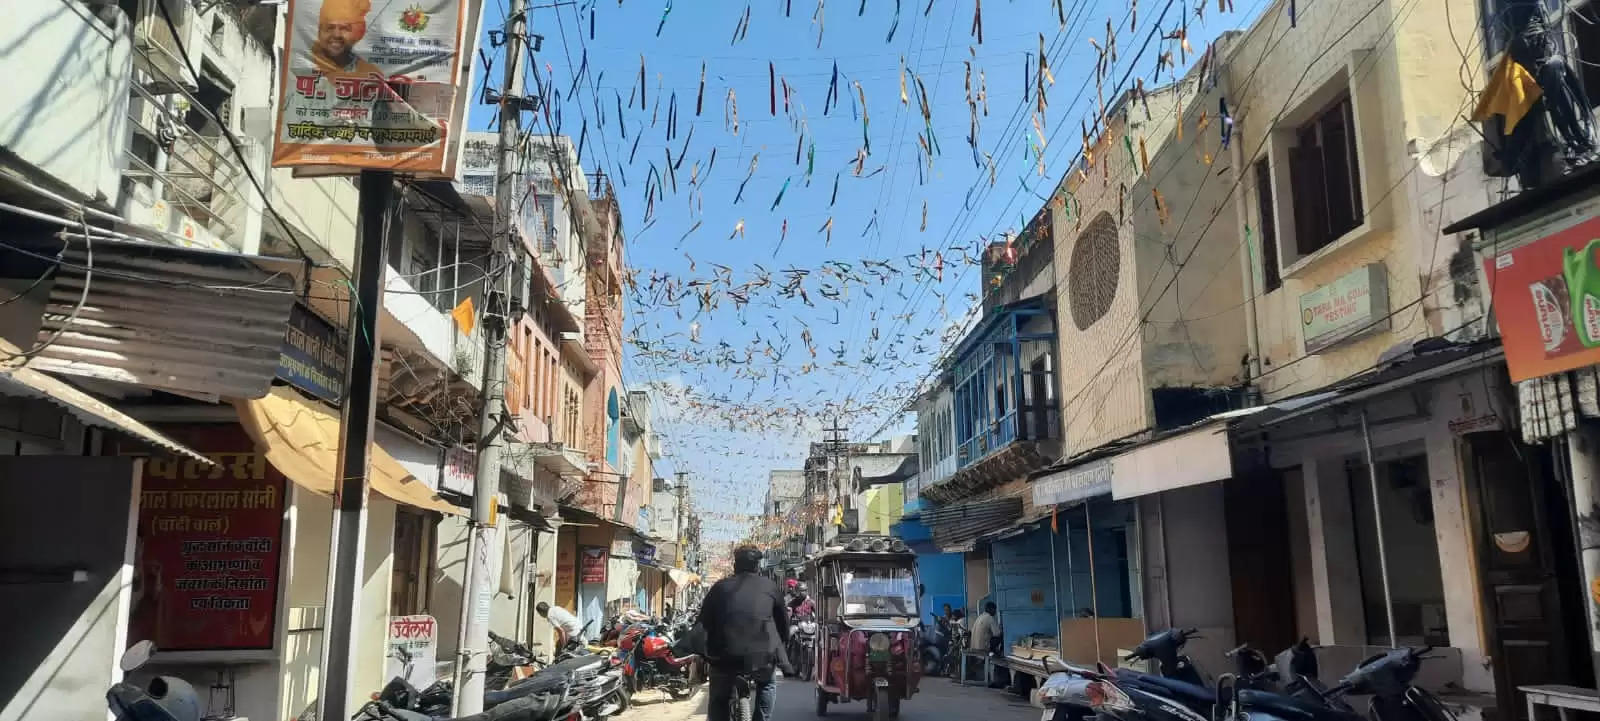 अलवर में दिवाली को लेकर व्यापारियों में उत्साह, व्यापार महासंघ ने सजवाये बाजार और चौराहे